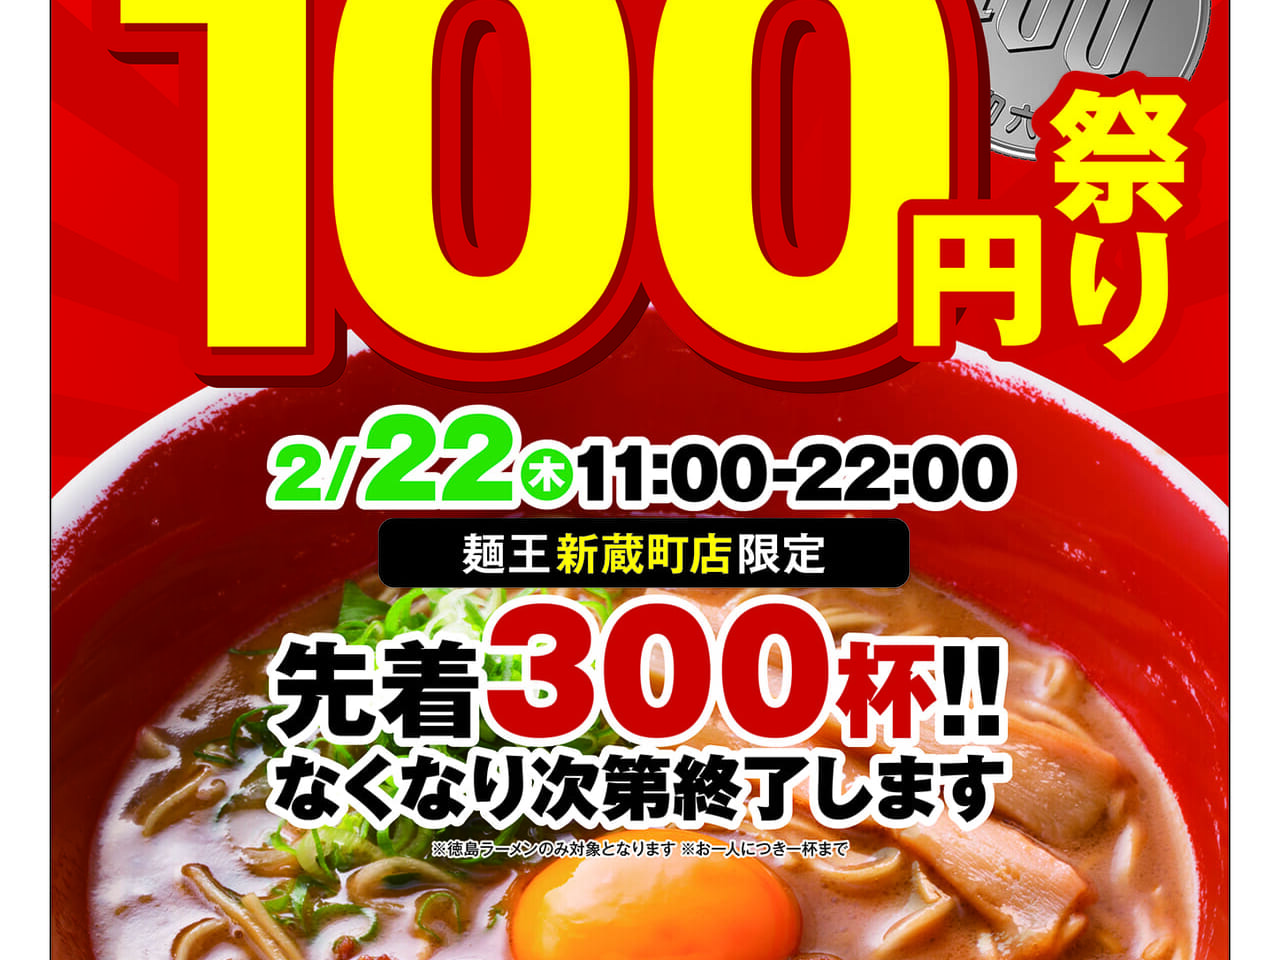 「麺王 新蔵町店」オープンキャンペーン画像。提供：「トマトマト（関係者様）」様。運営会社様の承諾を得て掲載しています。